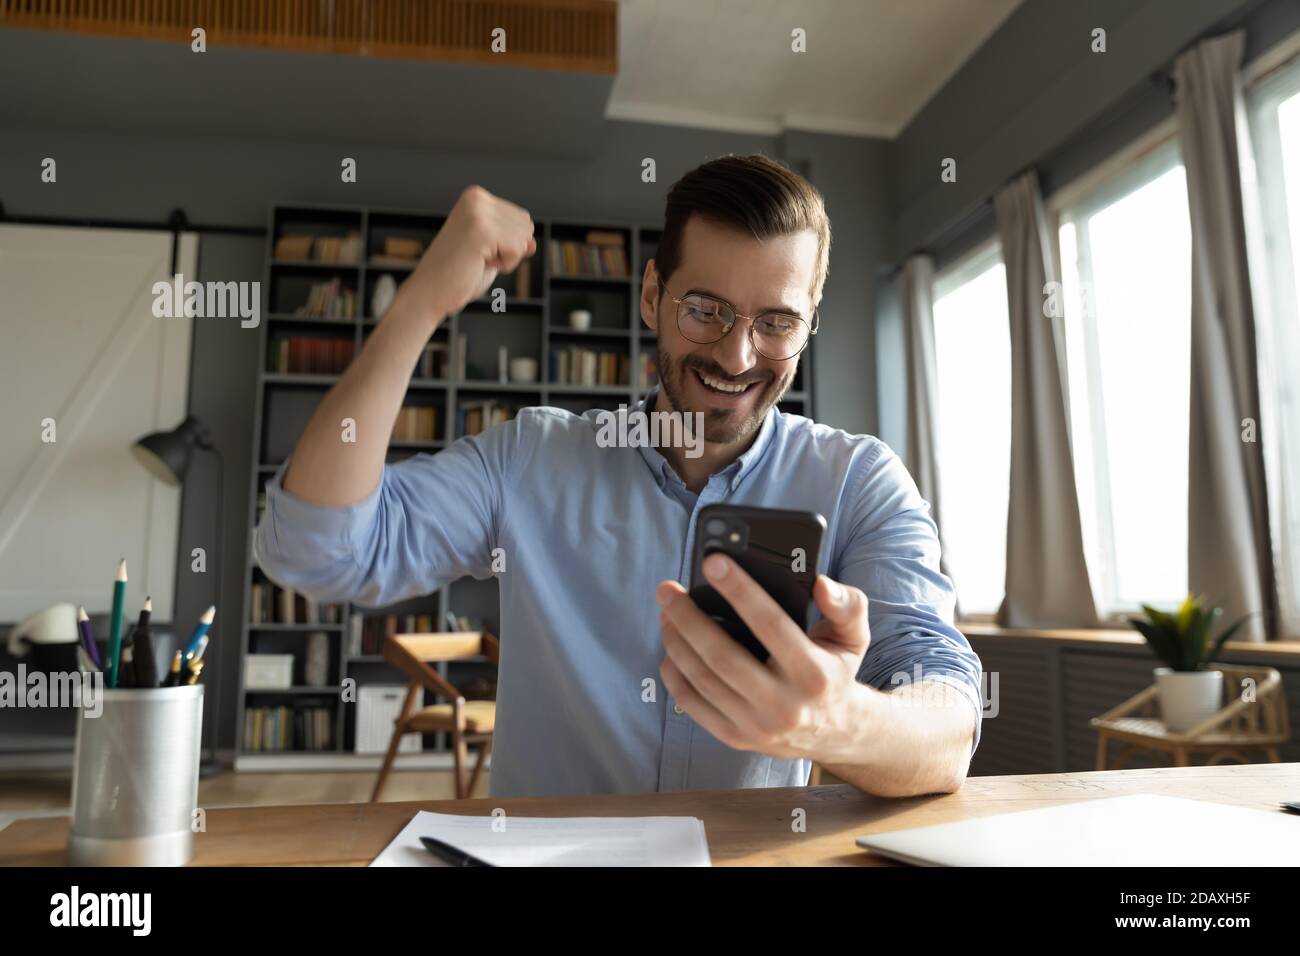 Der Mann, der auf den Bildschirm des Smartphones schaut, fühlt sich glücklich Stockfoto